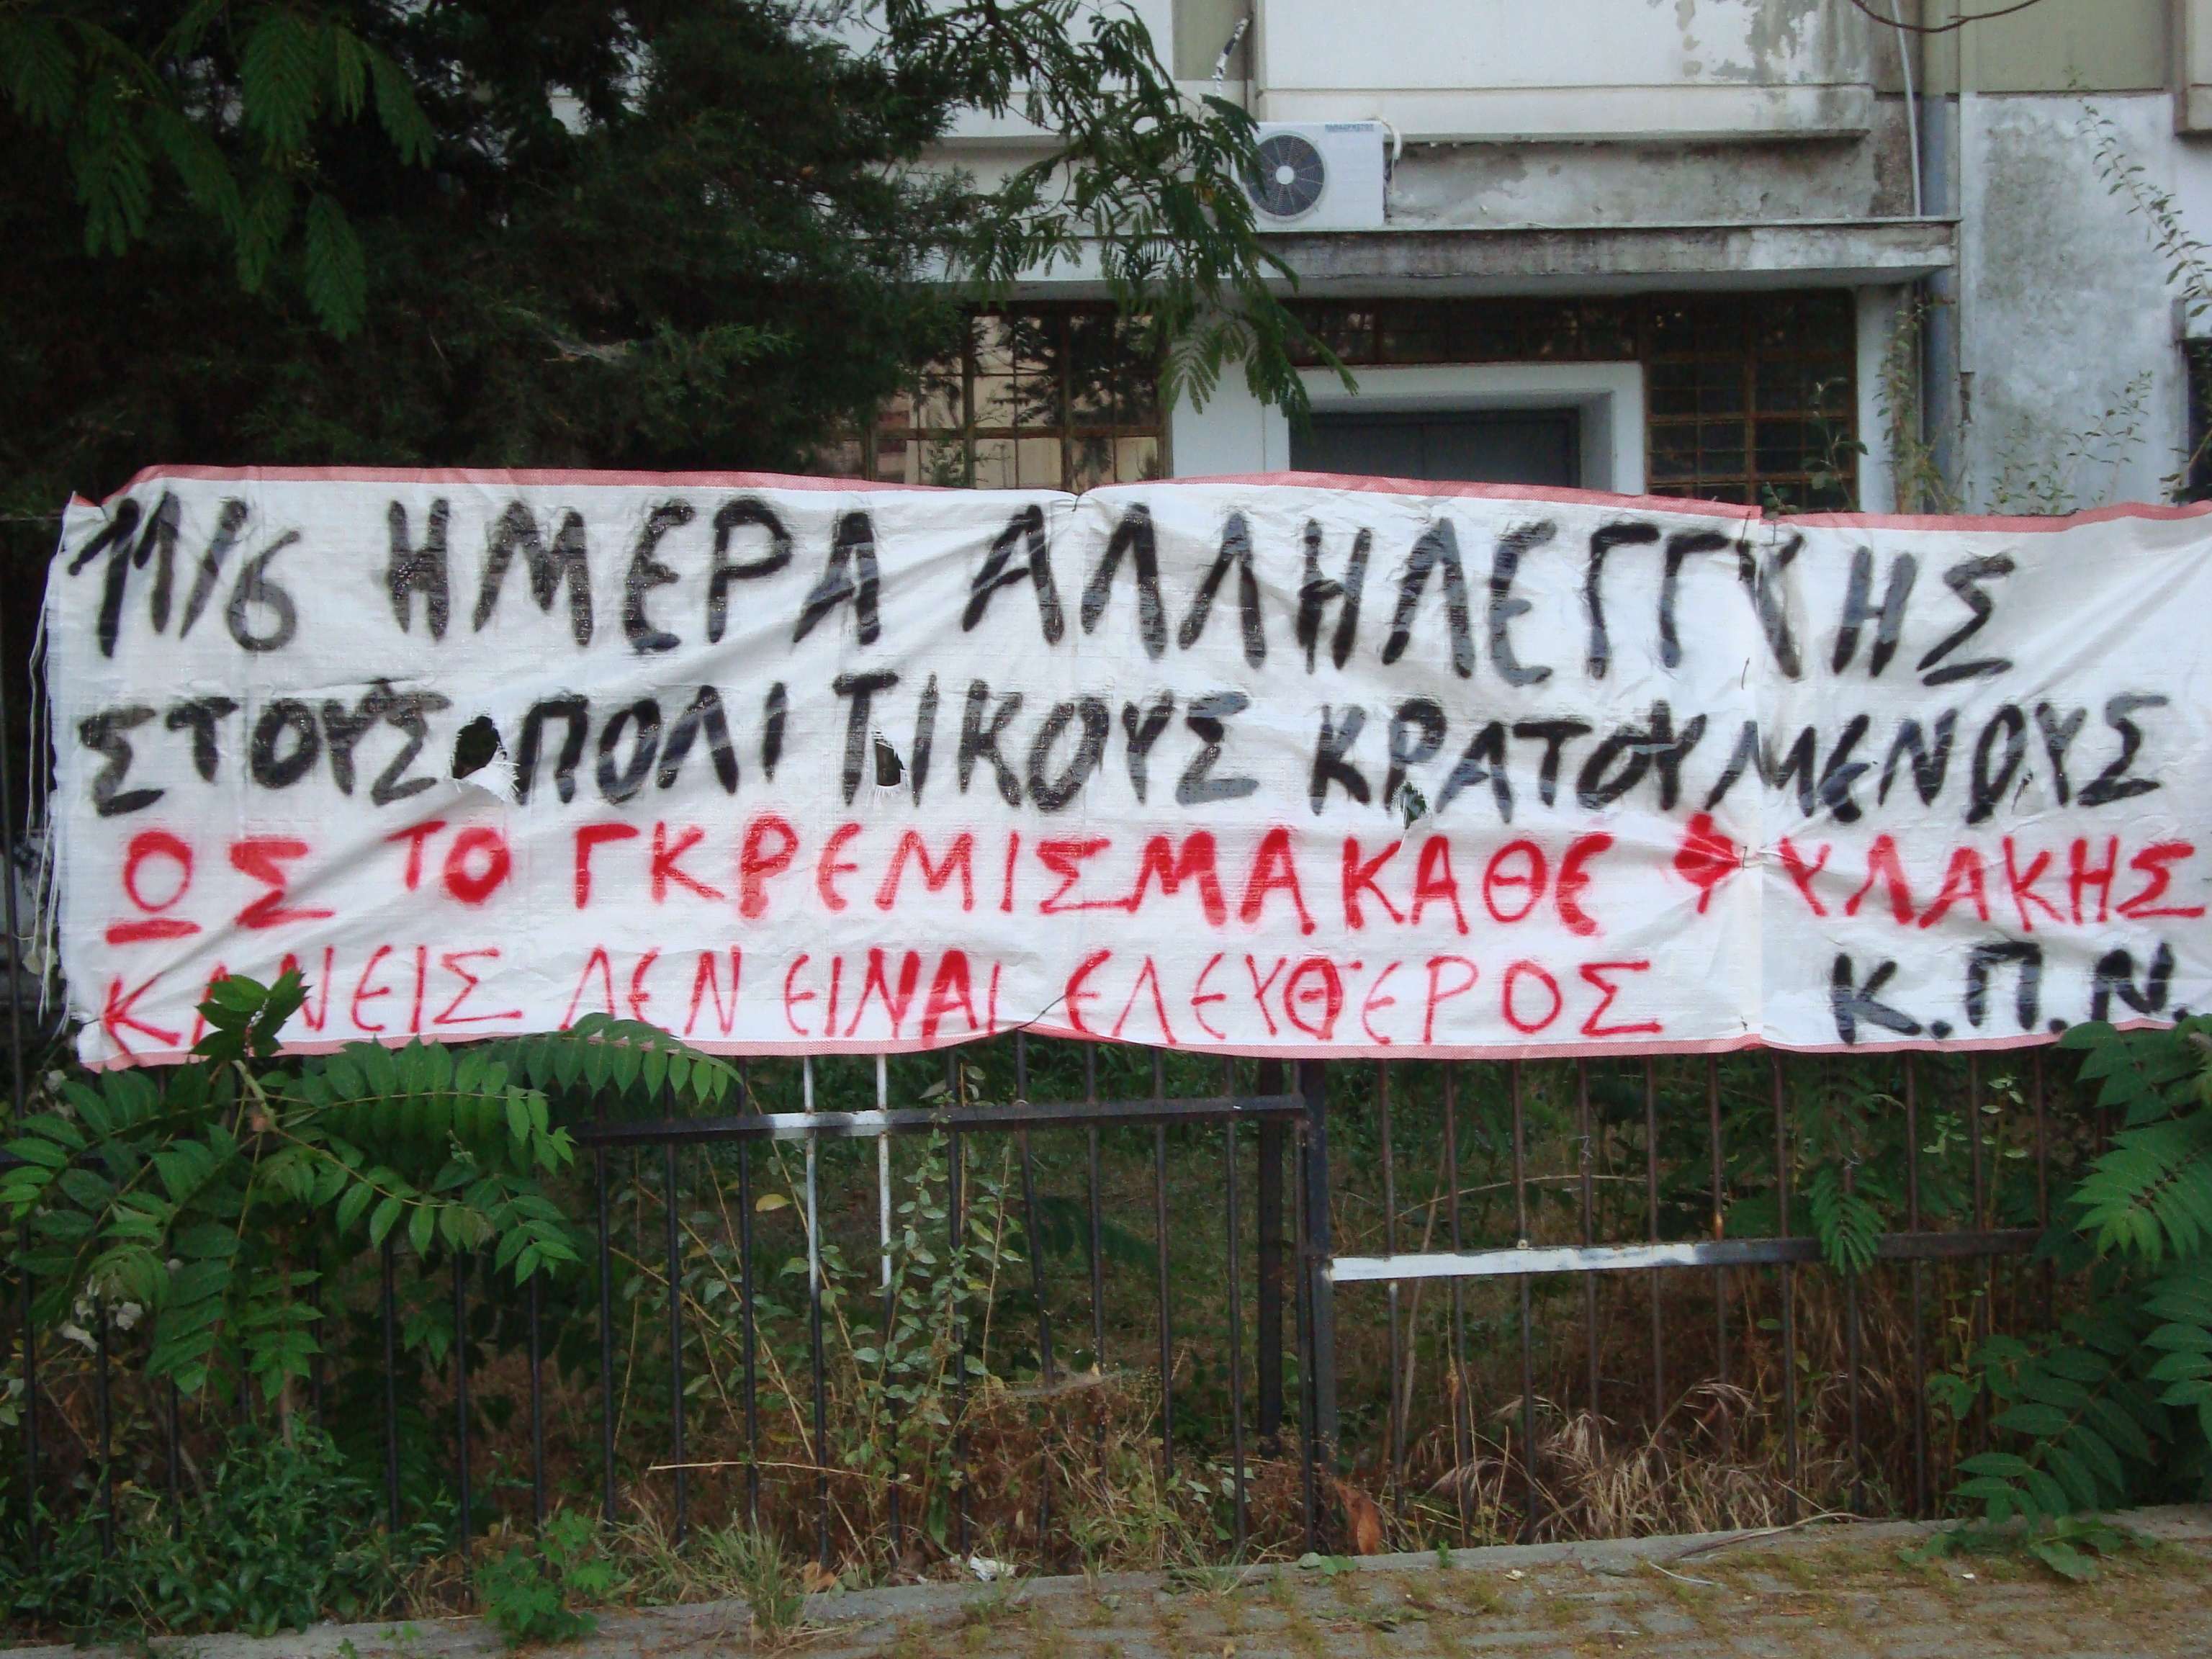 Αλεξανδρούπολη: Ανάρτηση πανό για την παγκόσμια μερα αλληλεγγύης στους αναρχικους κρατουμενους